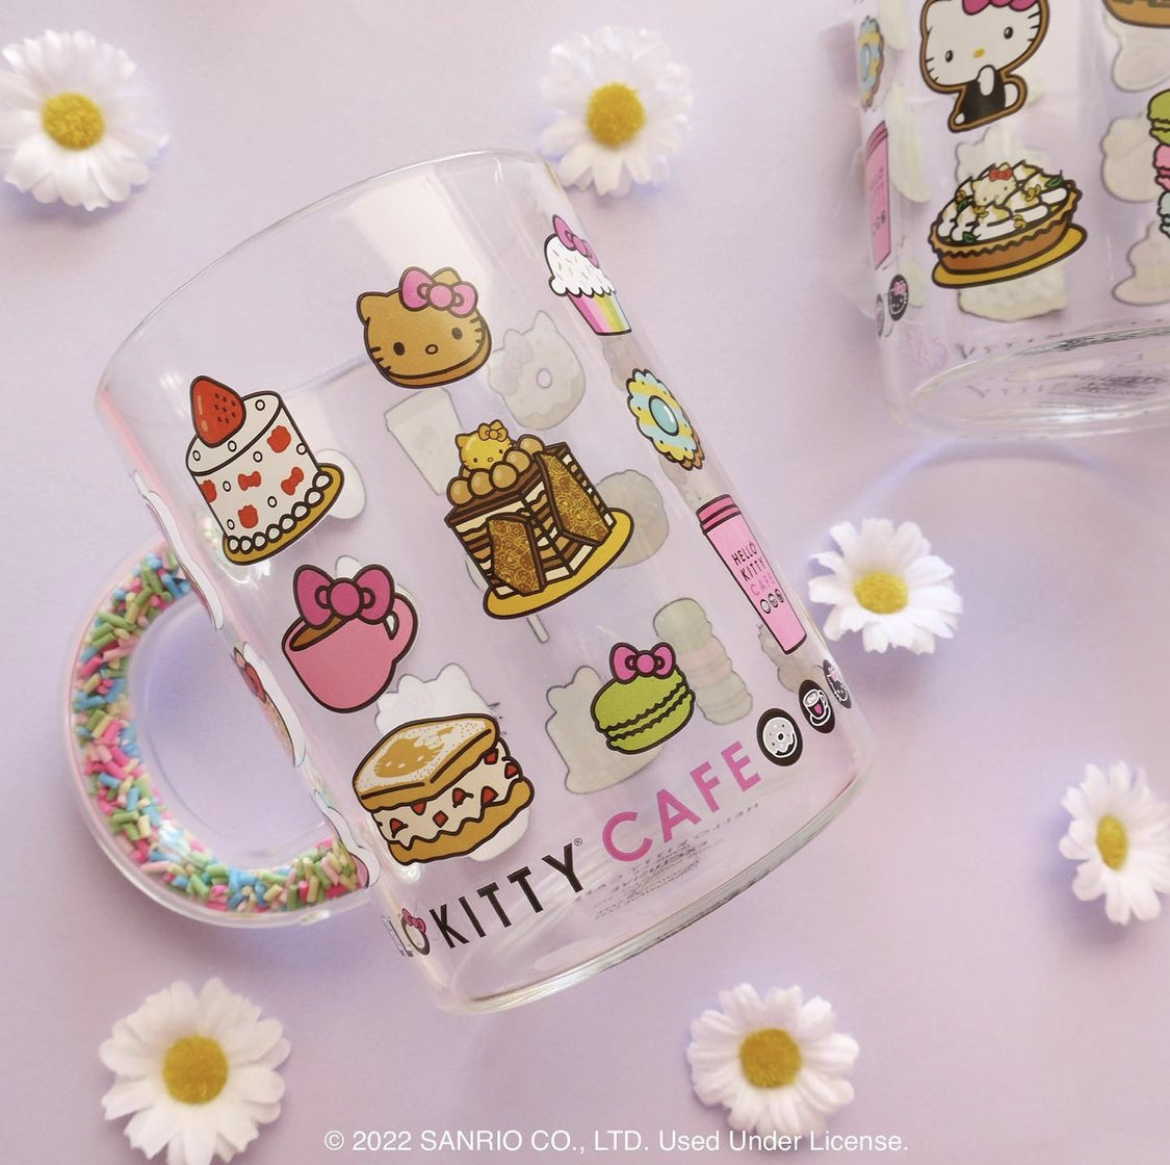 Sac à dos à roulettes Hello Kitty Twinkle 45 cm Noir - HOD22011-NOIR 